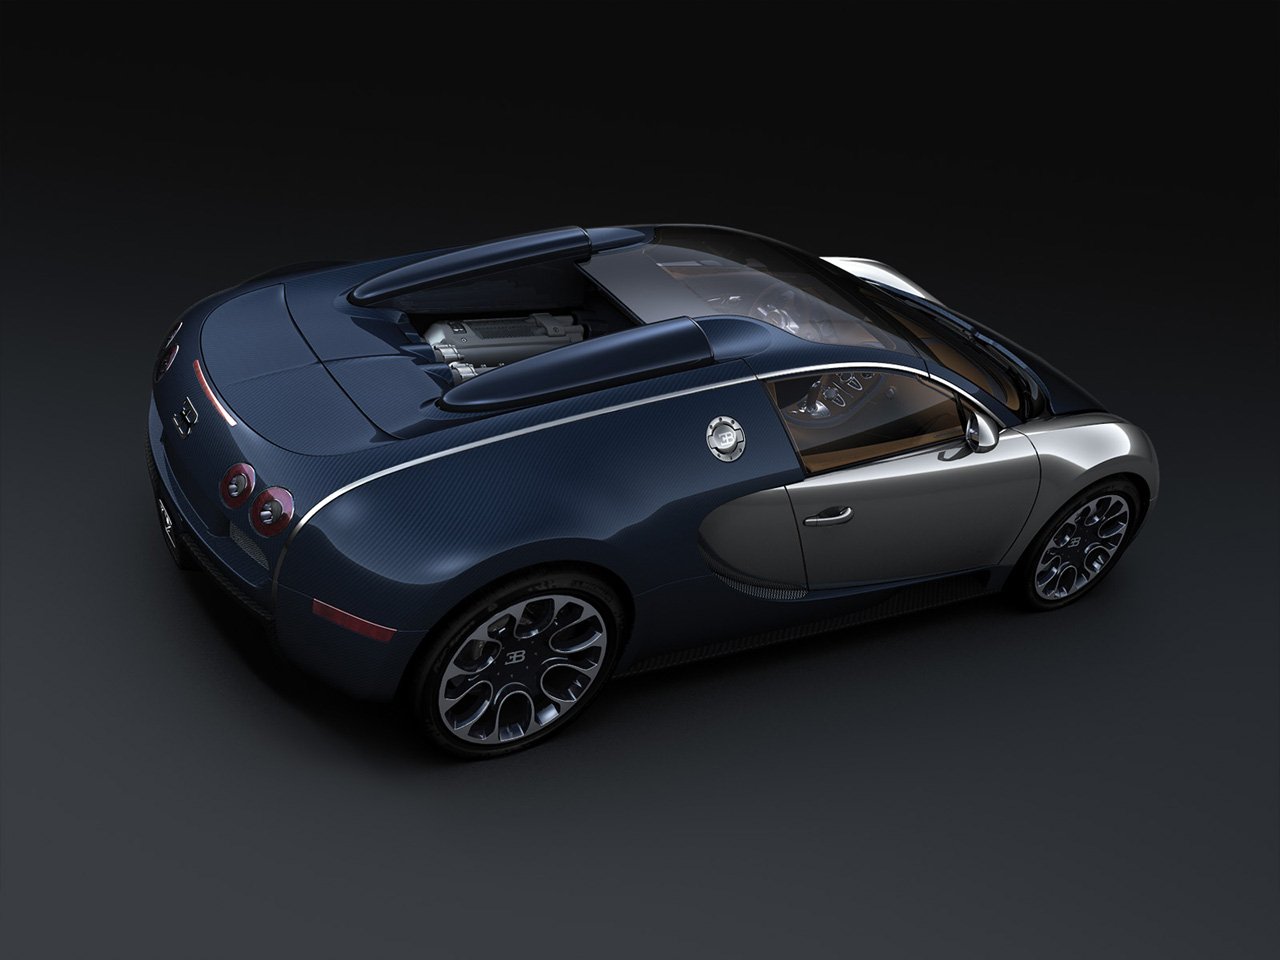 2010 Bugatti Veyron 16.4 Sang Bleu